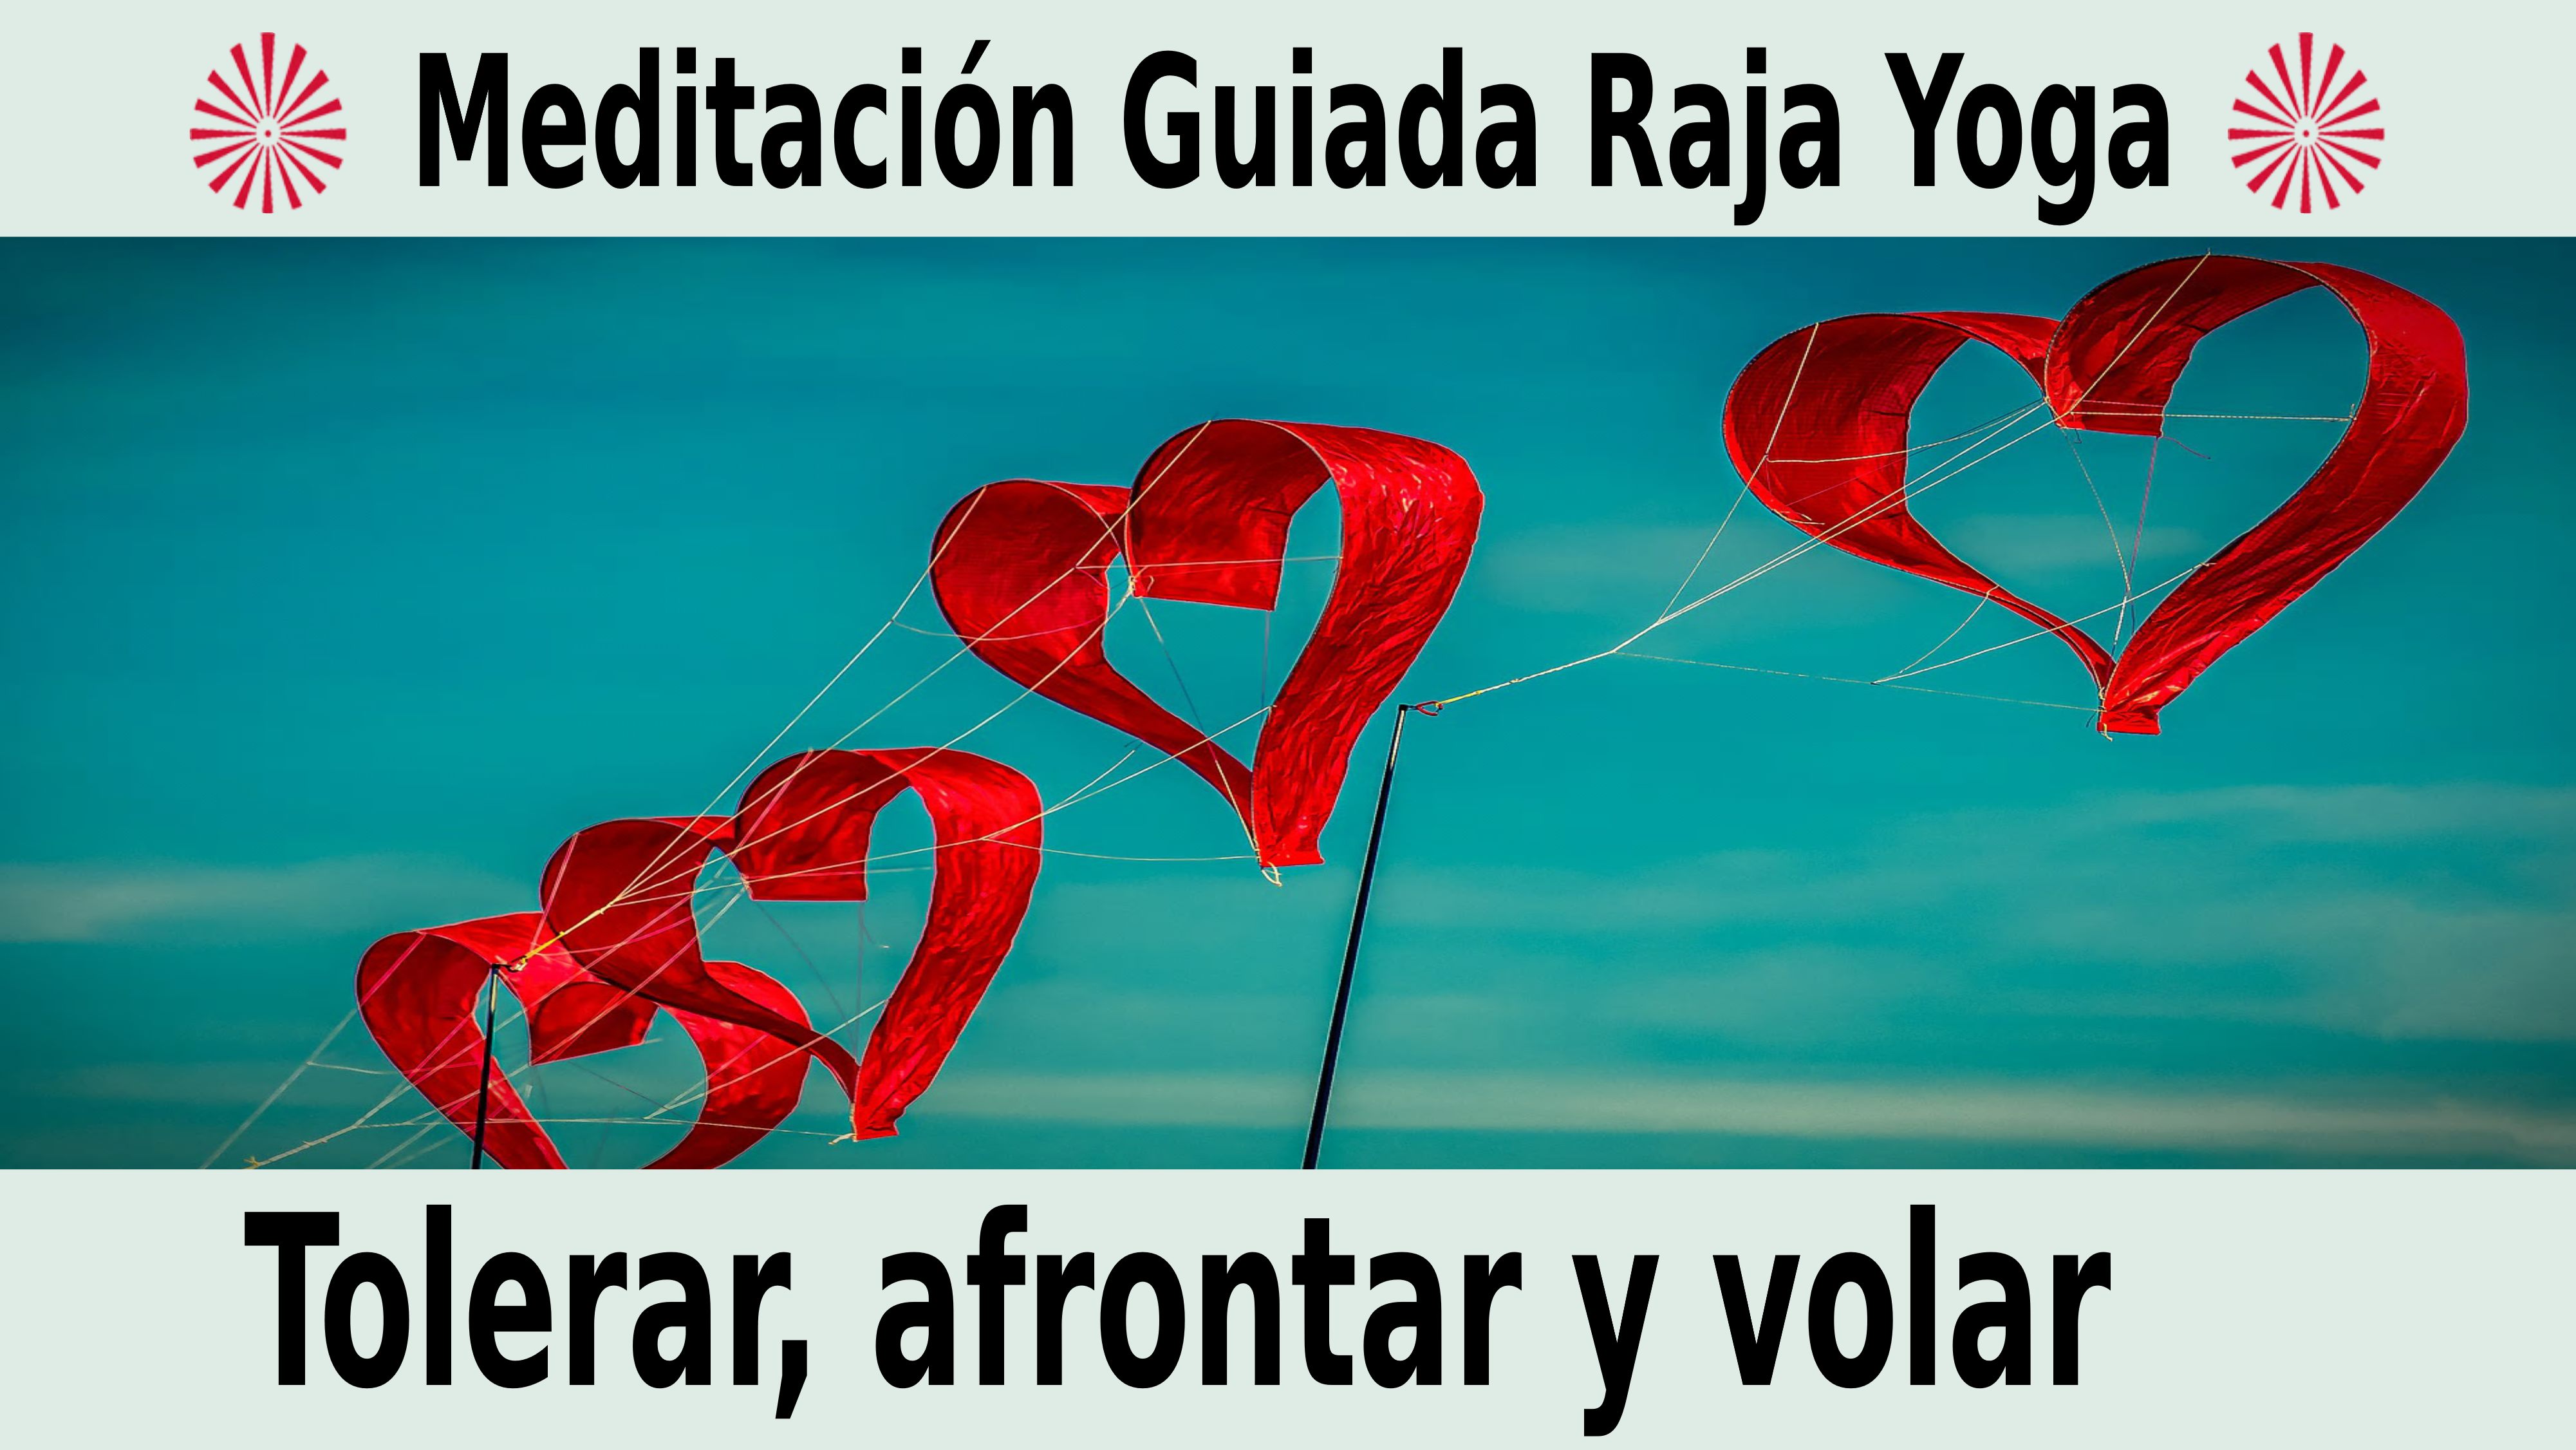 Meditación Raja Yoga: Tolerar, afrontar y volar (5 Noviembre 2020) On-line desde Barcelona